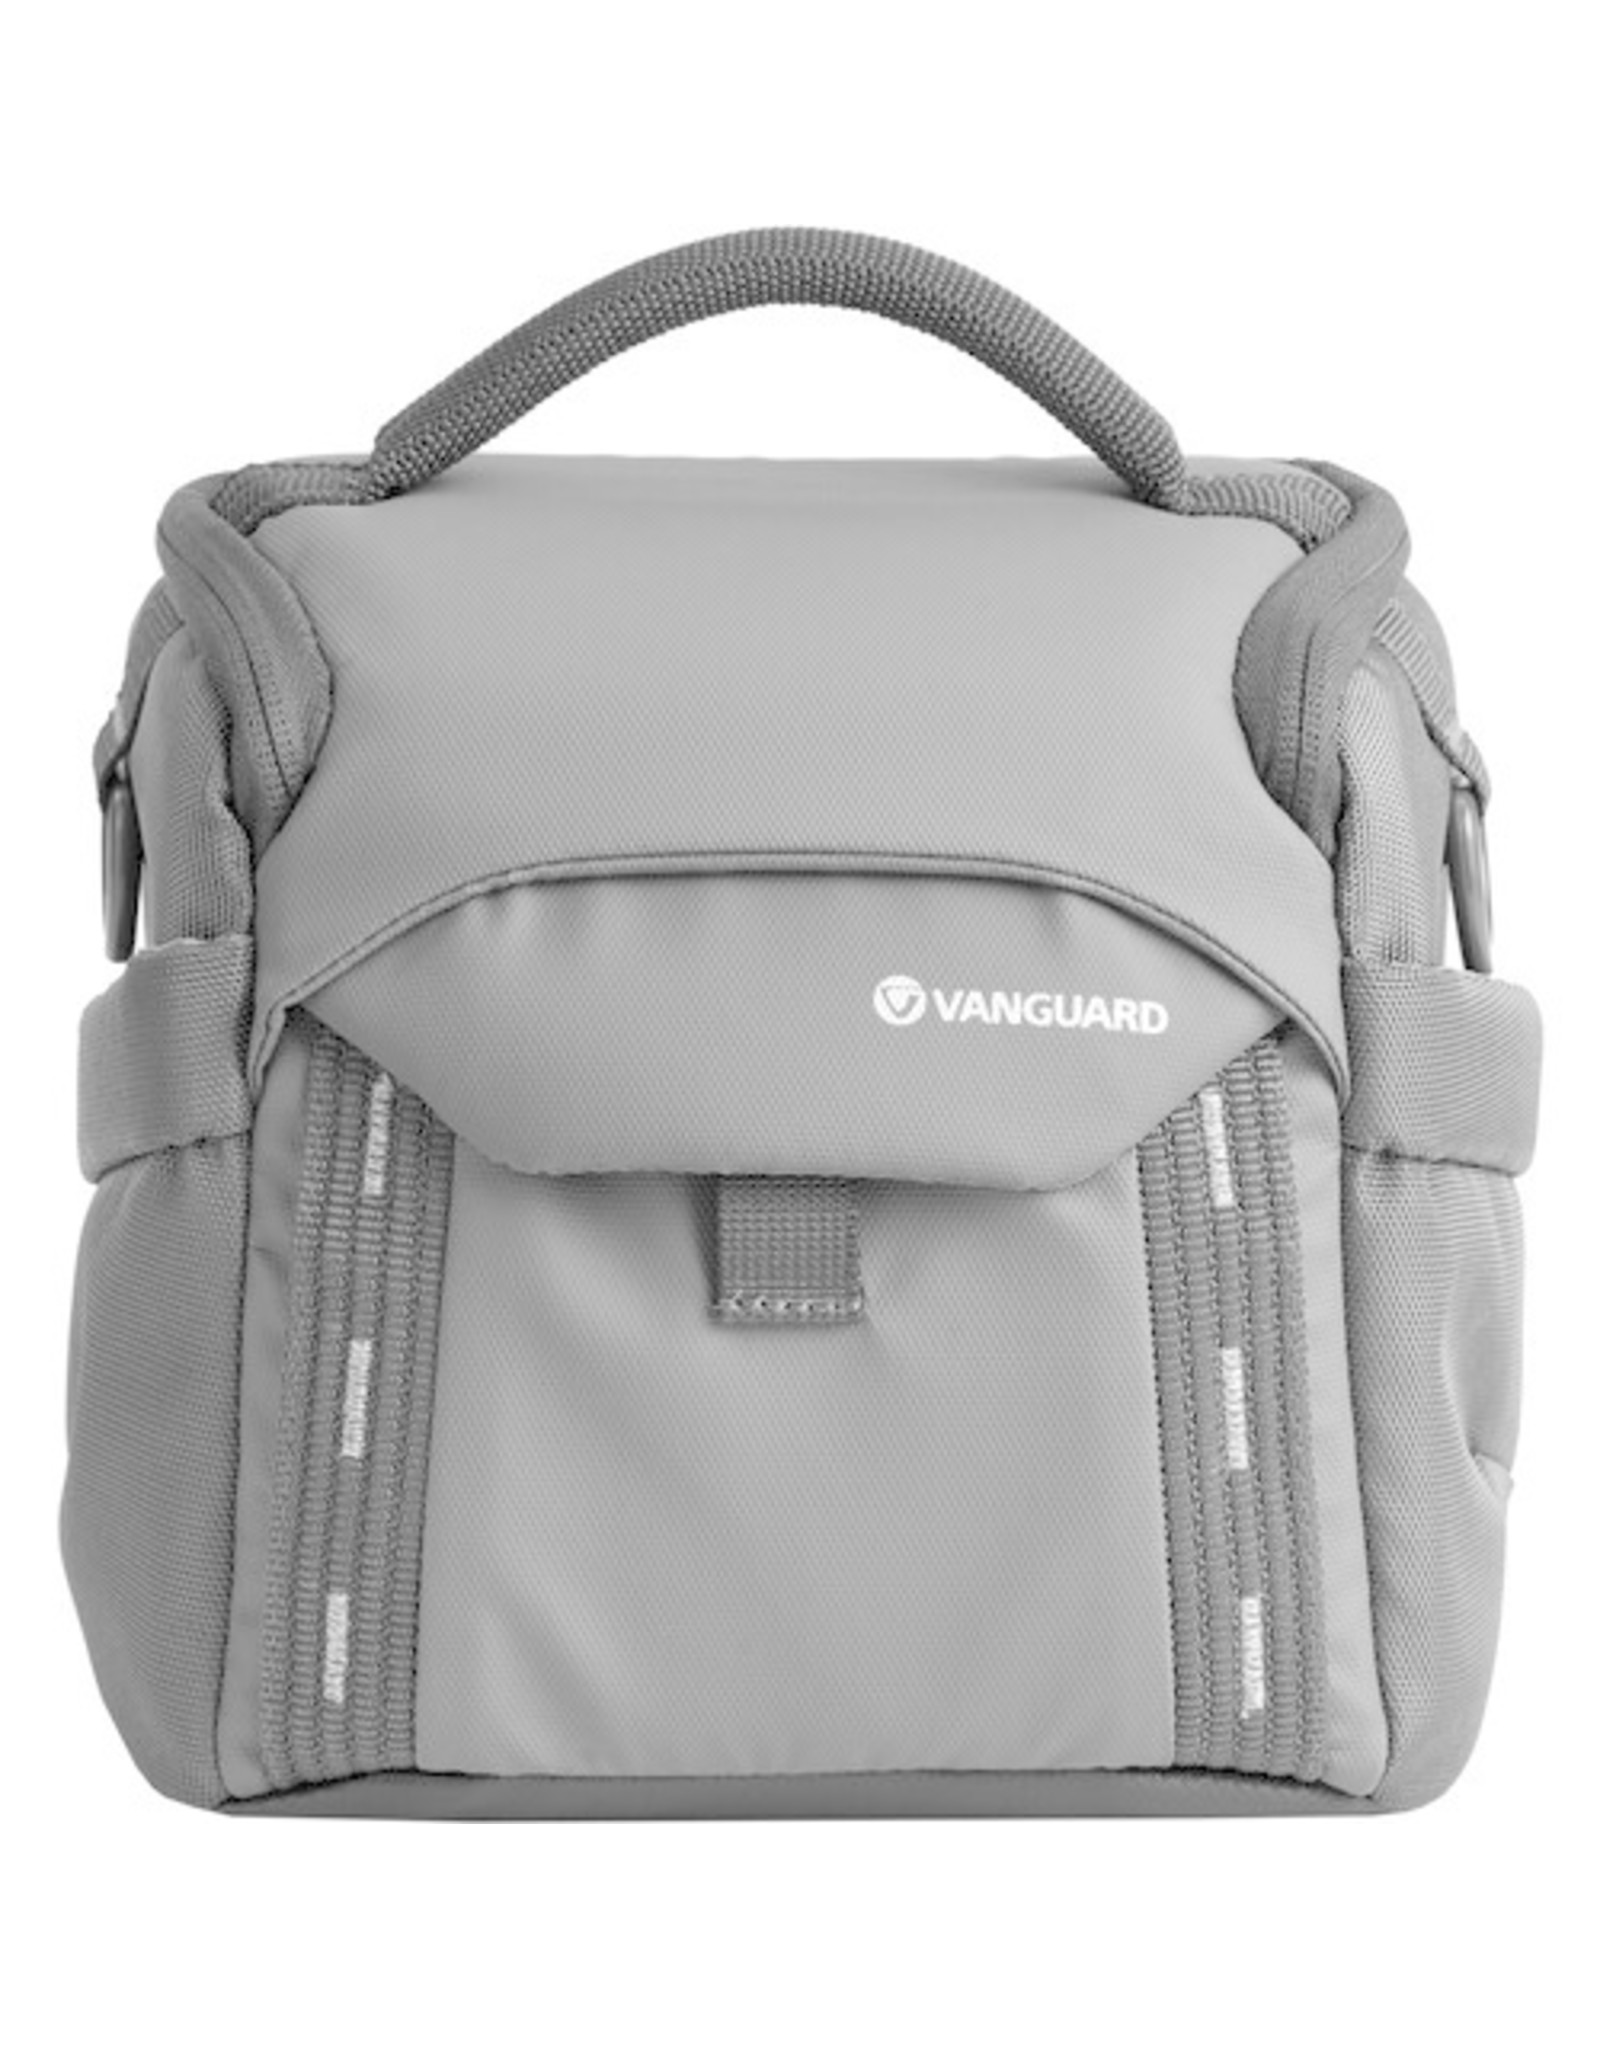 Vanguard Vanguard VEO Adaptor 15M Camera Shoulder Bag (CHOOSE COLOR)